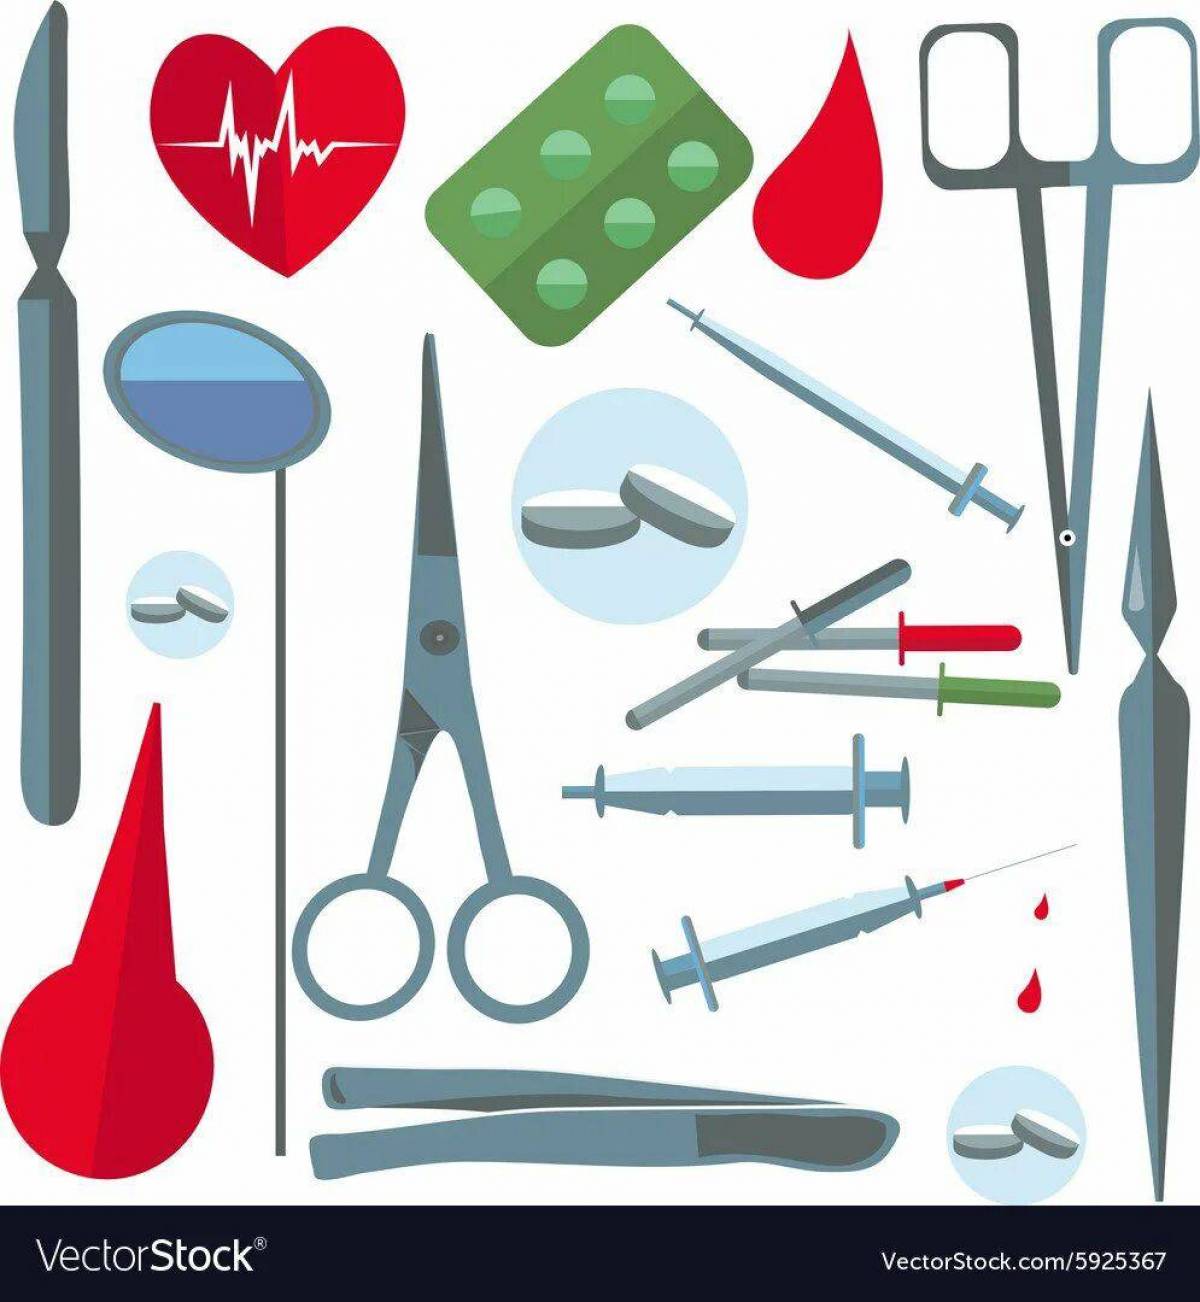 Медицинские инструменты для детей #20